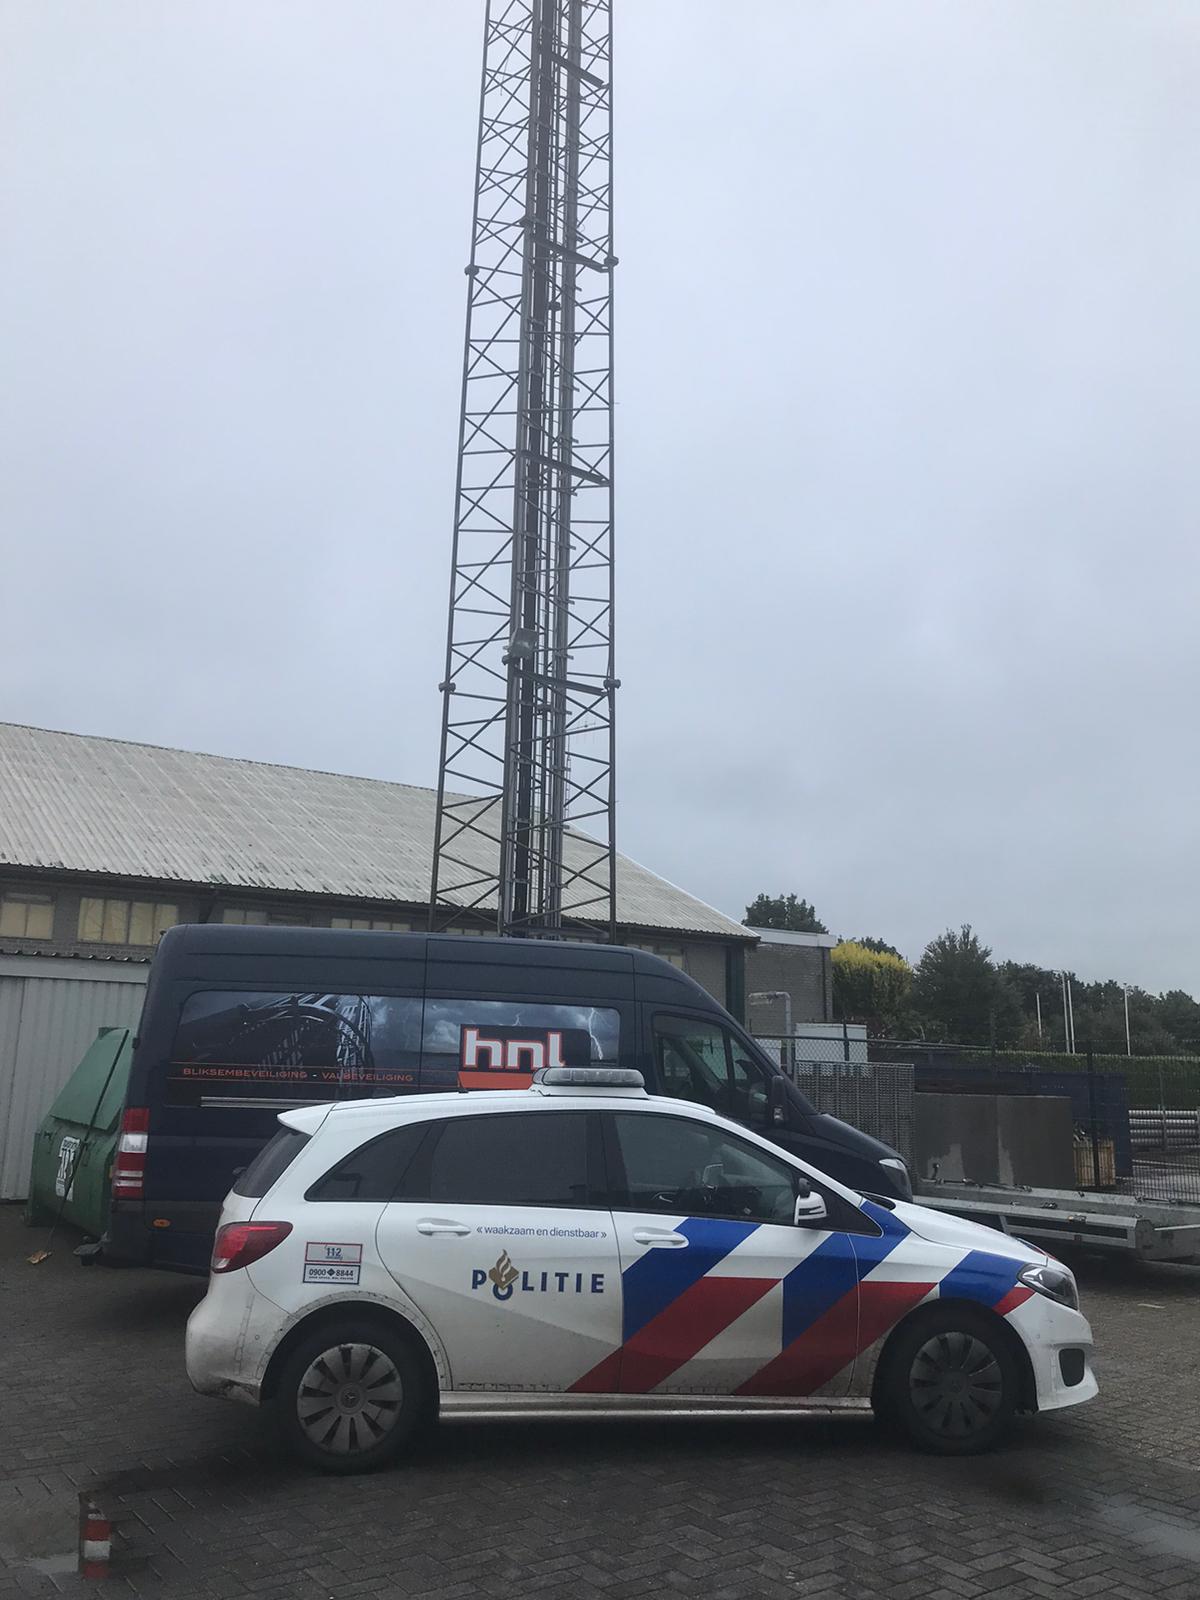 2020-07-10-Antenne-TwenteFM-Wierden-aangezien-voor-geheime-zender.jpg